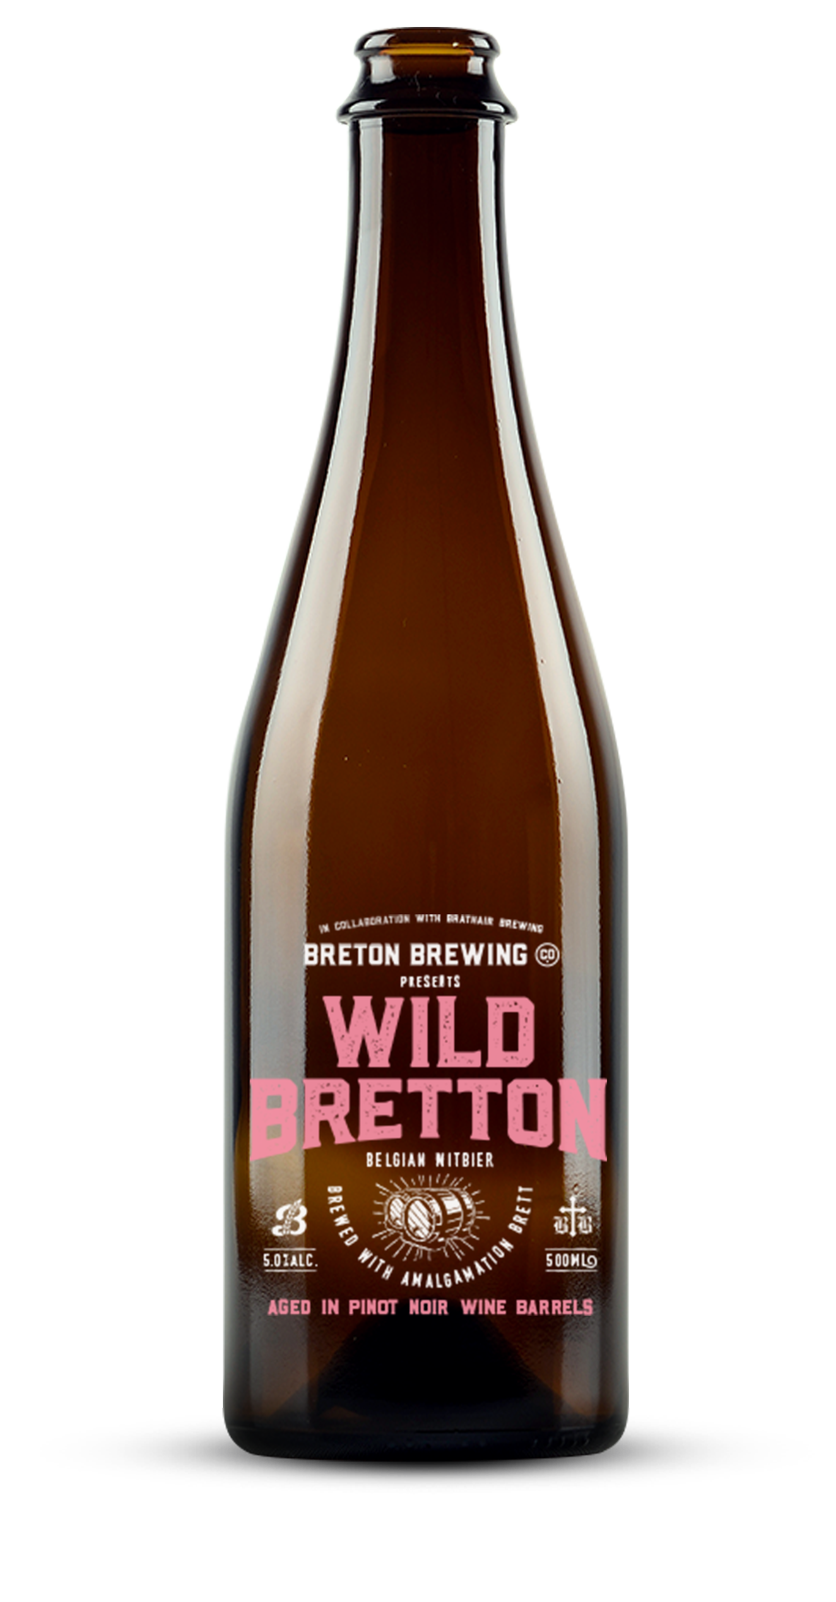 Wild Bretton Belgian Witbier - Pinot Noir